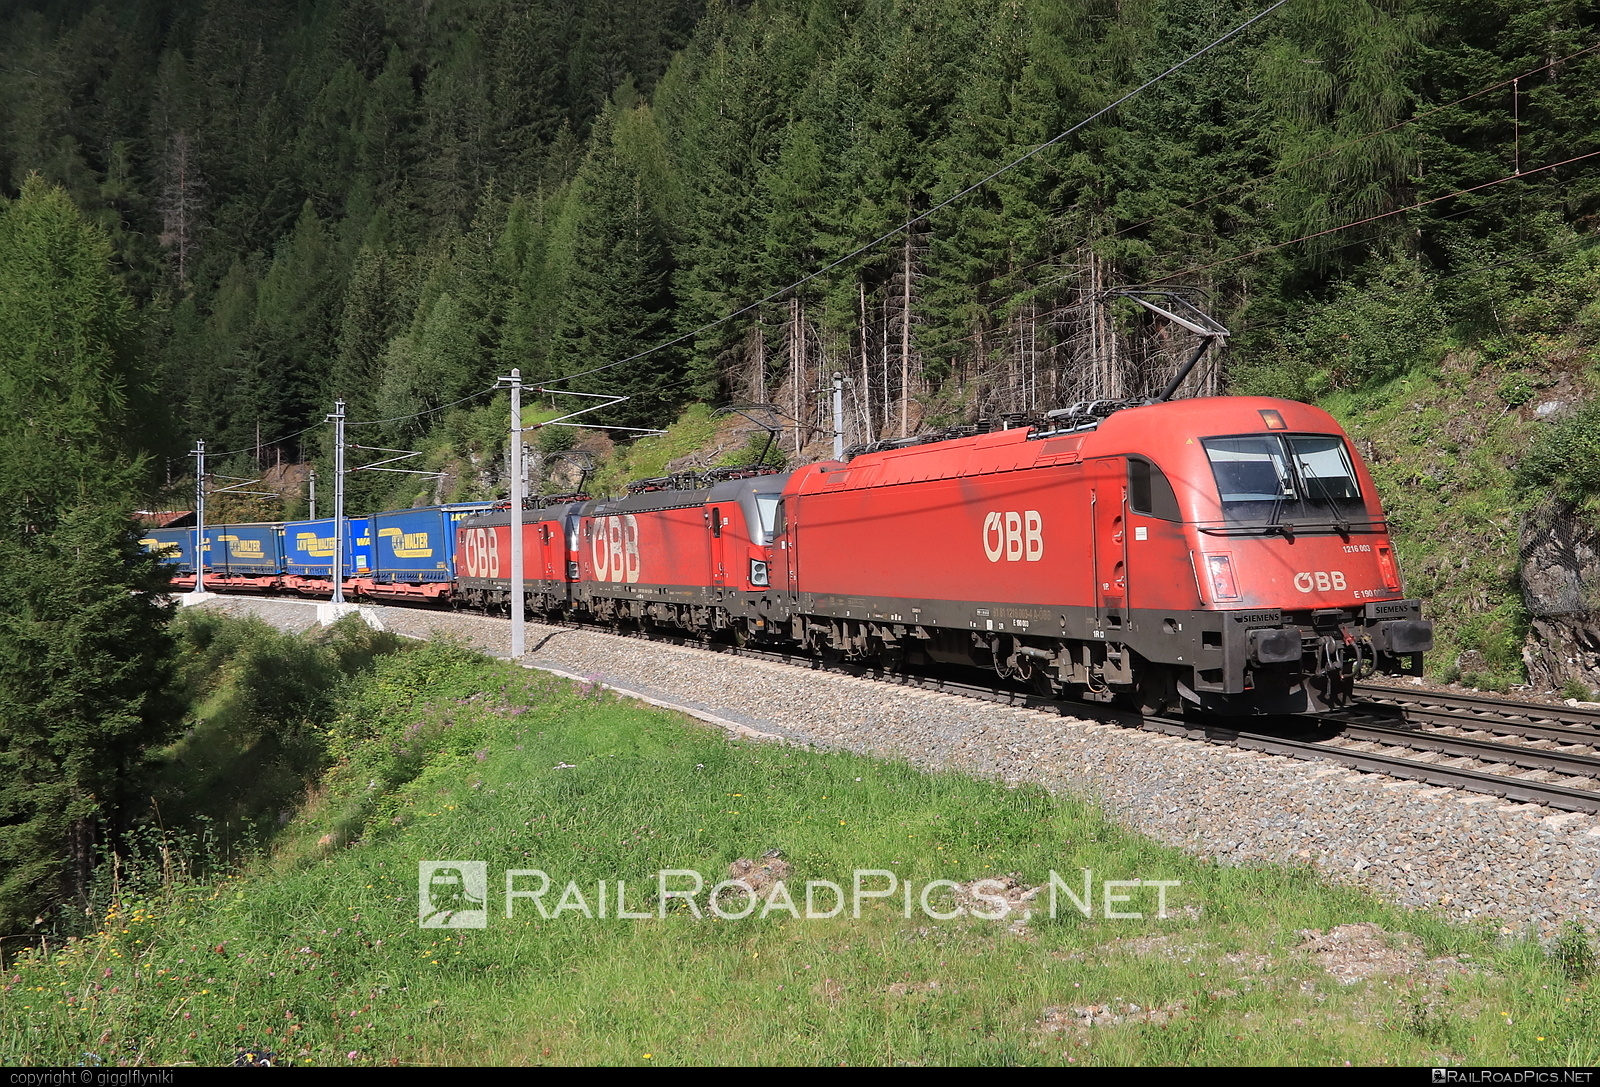 Siemens ES 64 U4 - 1216 003 operated by Rail Cargo Austria AG #es64 #es64u4 #eurosprinter #flatwagon #lkwwalter #obb #osterreichischebundesbahnen #rcw #semitrailer #siemens #siemensEs64 #siemensEs64u4 #siemenstaurus #taurus #tauruslocomotive